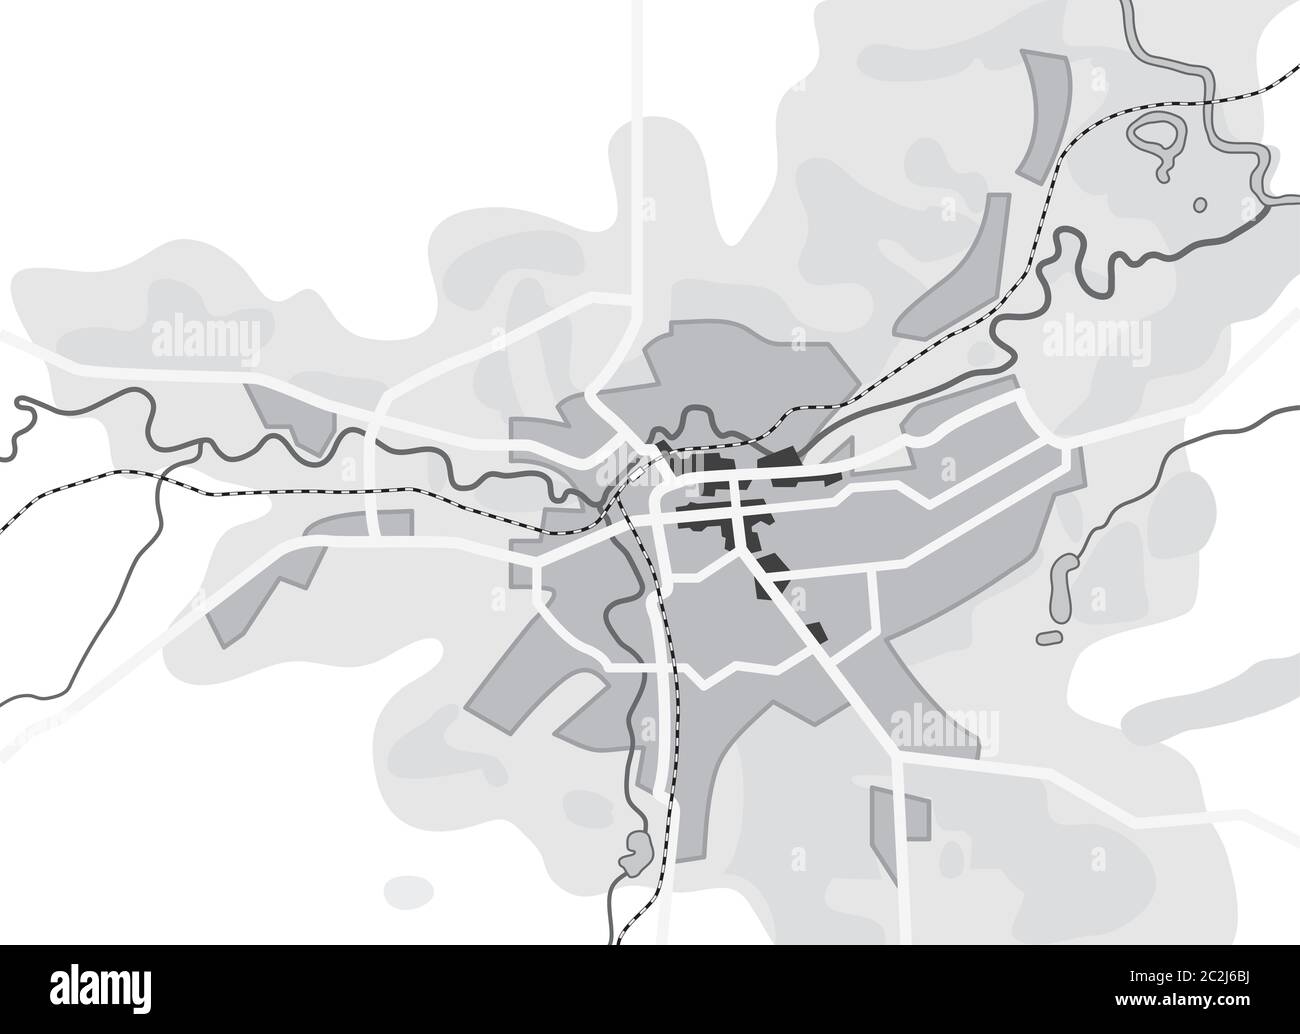 Karte der Stadt. Navigation Reiseführer, Route Urban Chart, geografische Lage. Stockfoto